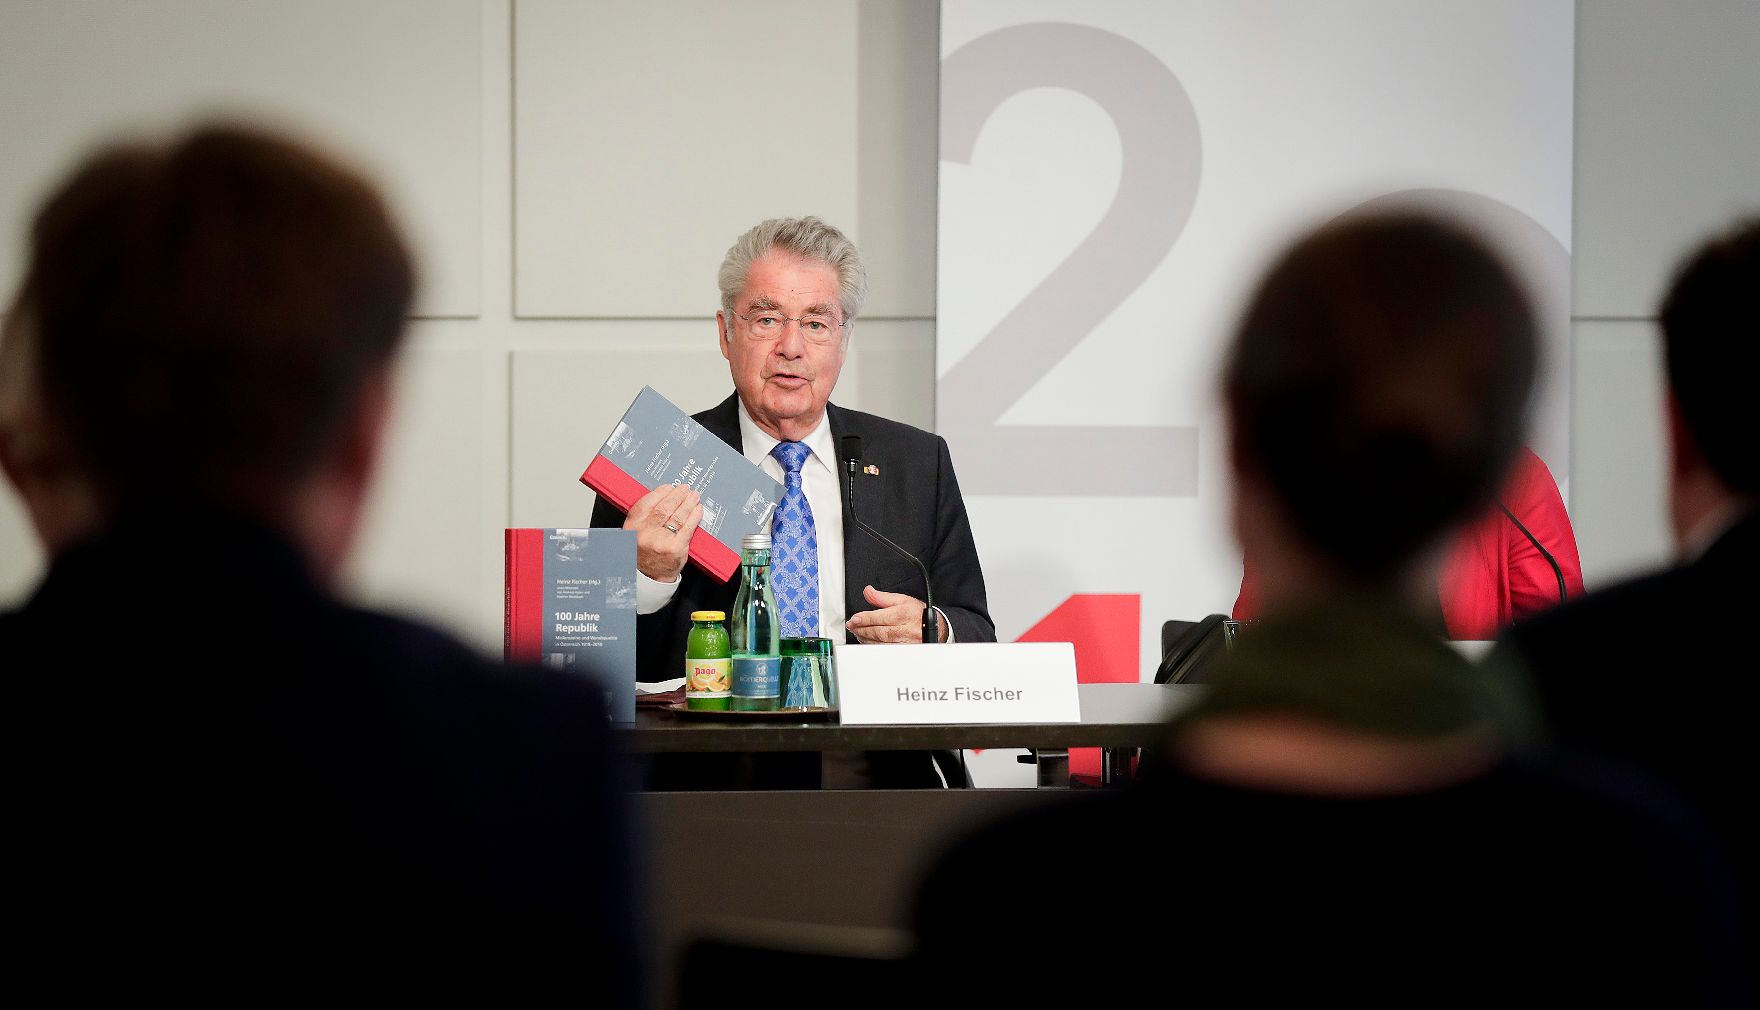 Am 26. April 2018 fand die Buchpräsentation zum Gedenk- und Erinnerungsjahr im Presseclub Concordia statt. Im Bild der Bundespräsident a.D. Heinz Fischer.